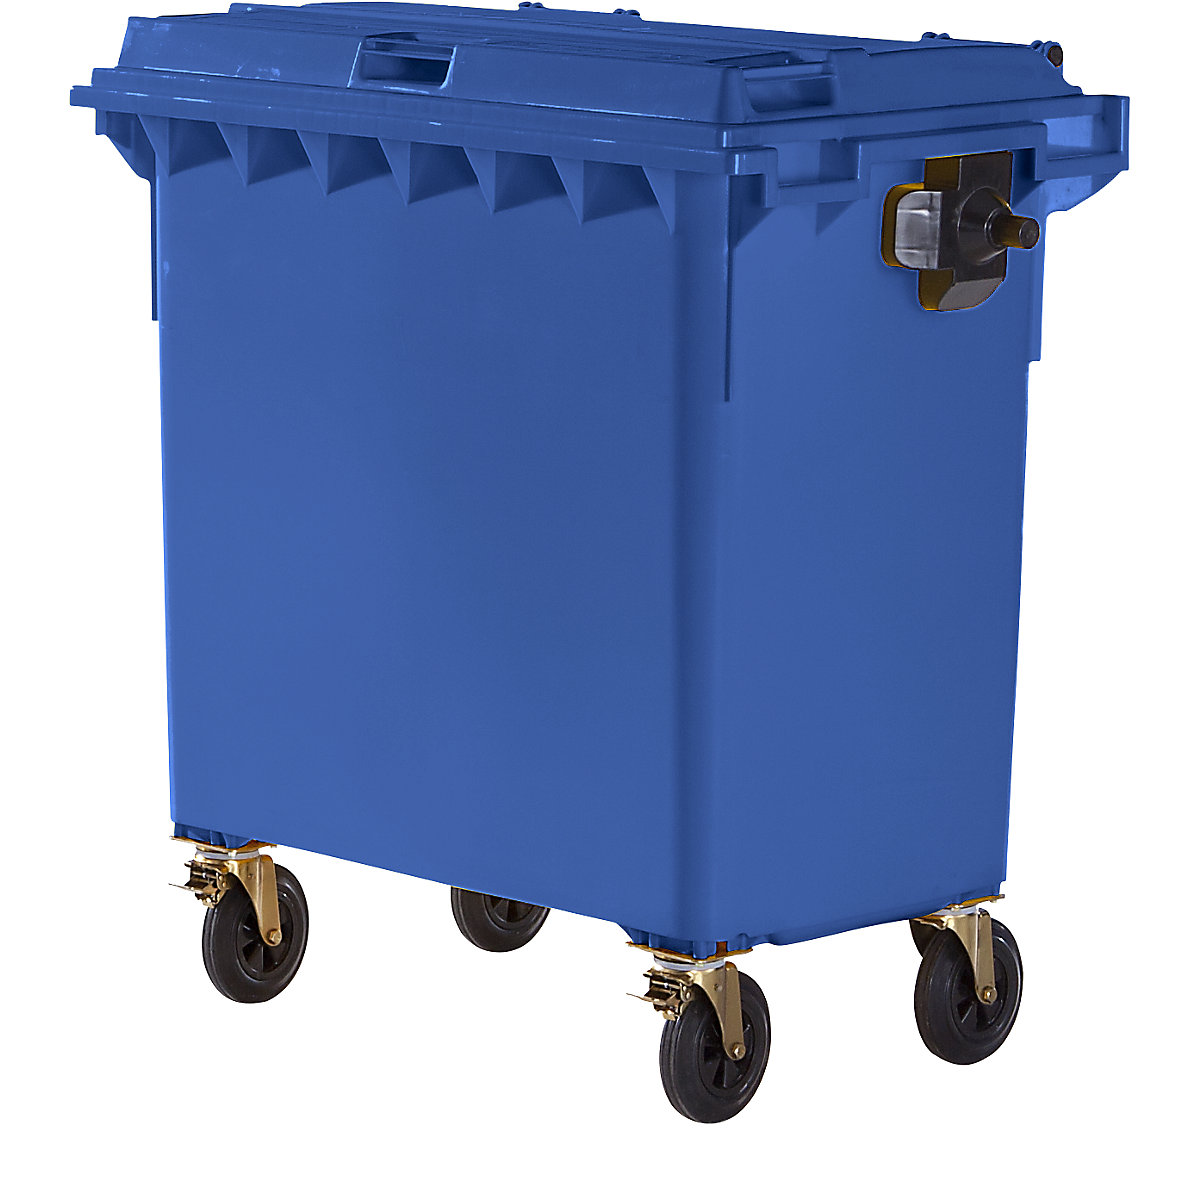 Müllcontainer aus Kunststoff, DIN EN 840, Volumen 770 l, BxHxT 1360 x 1330 x 770 mm, blau-4